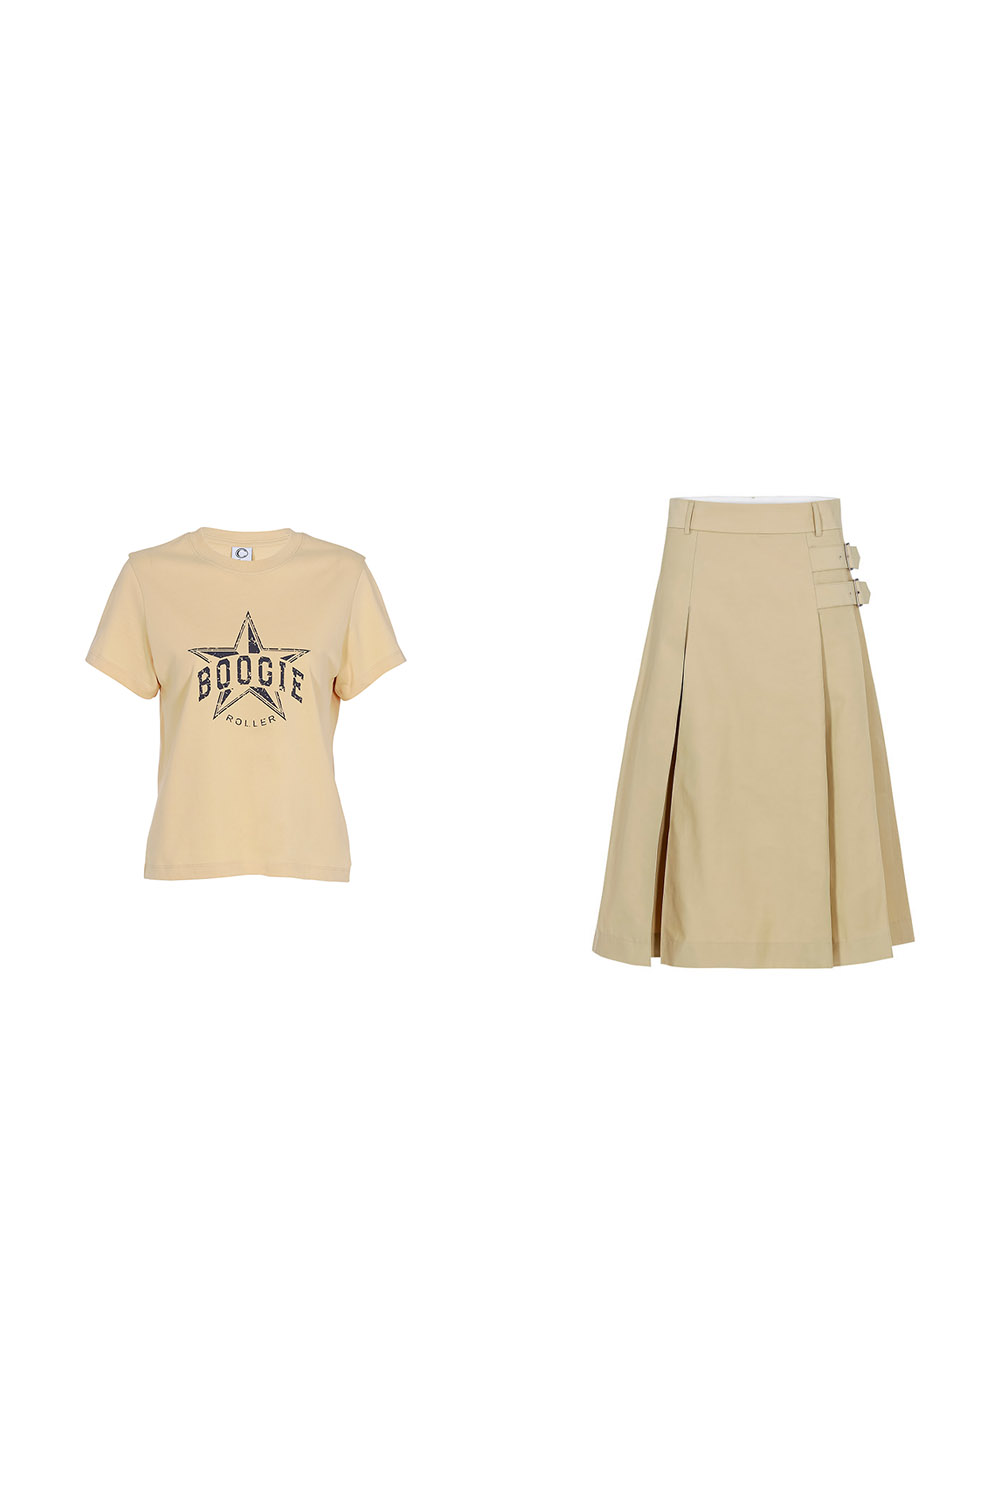 Boogie T-shirts_beige+Sounds Paris Skirt_beige